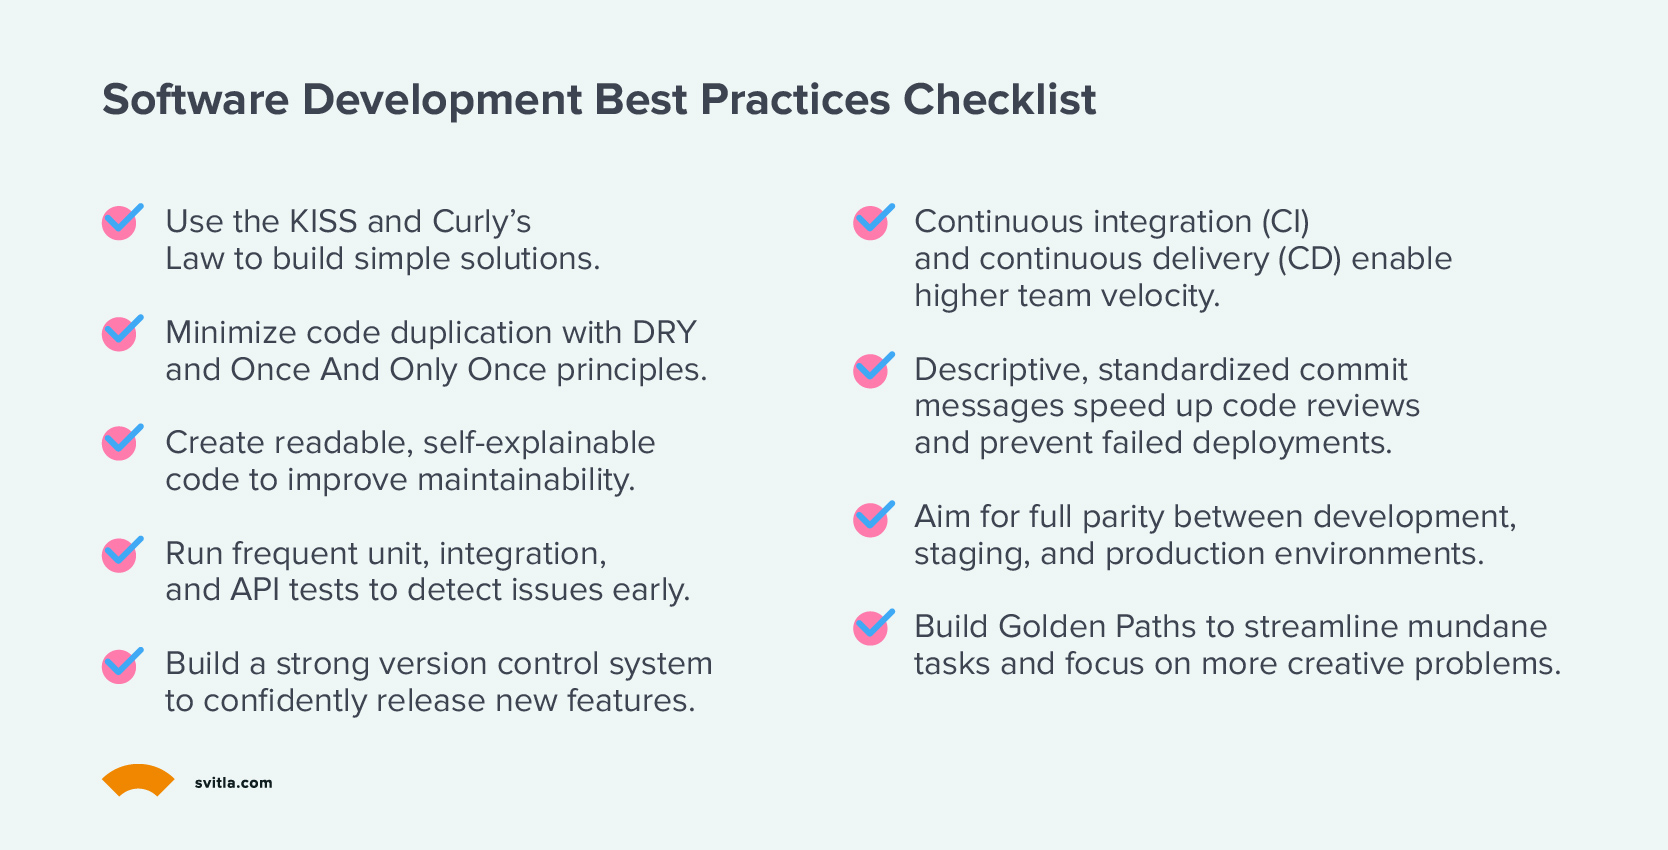 Software development best practices checklist